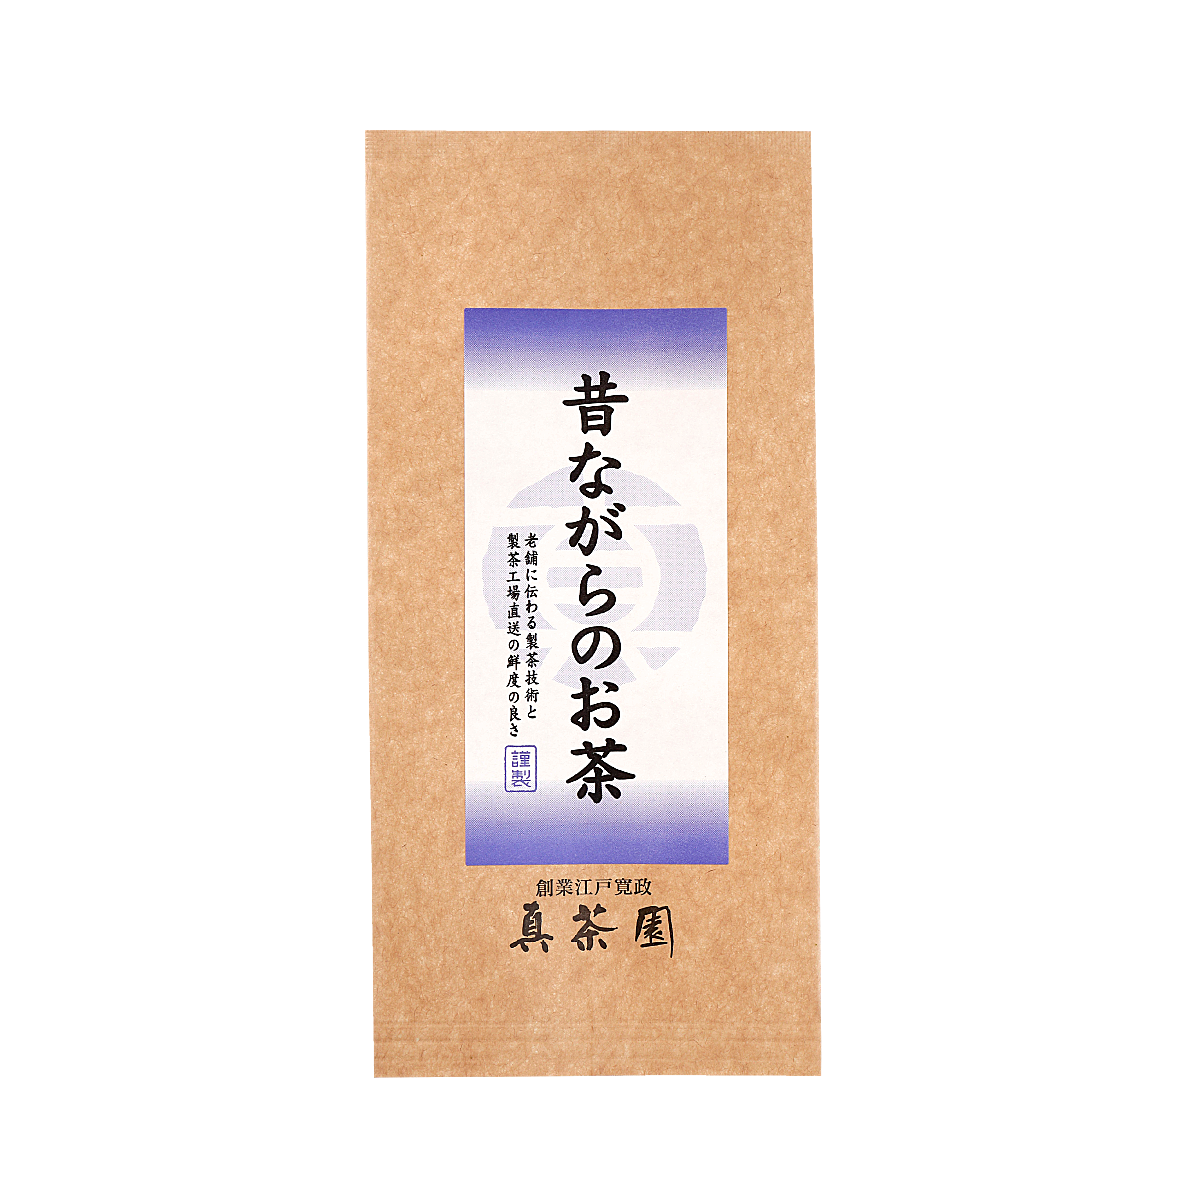 【新茶・出荷予定日は5月23日】昔ながらのお茶 優 100g